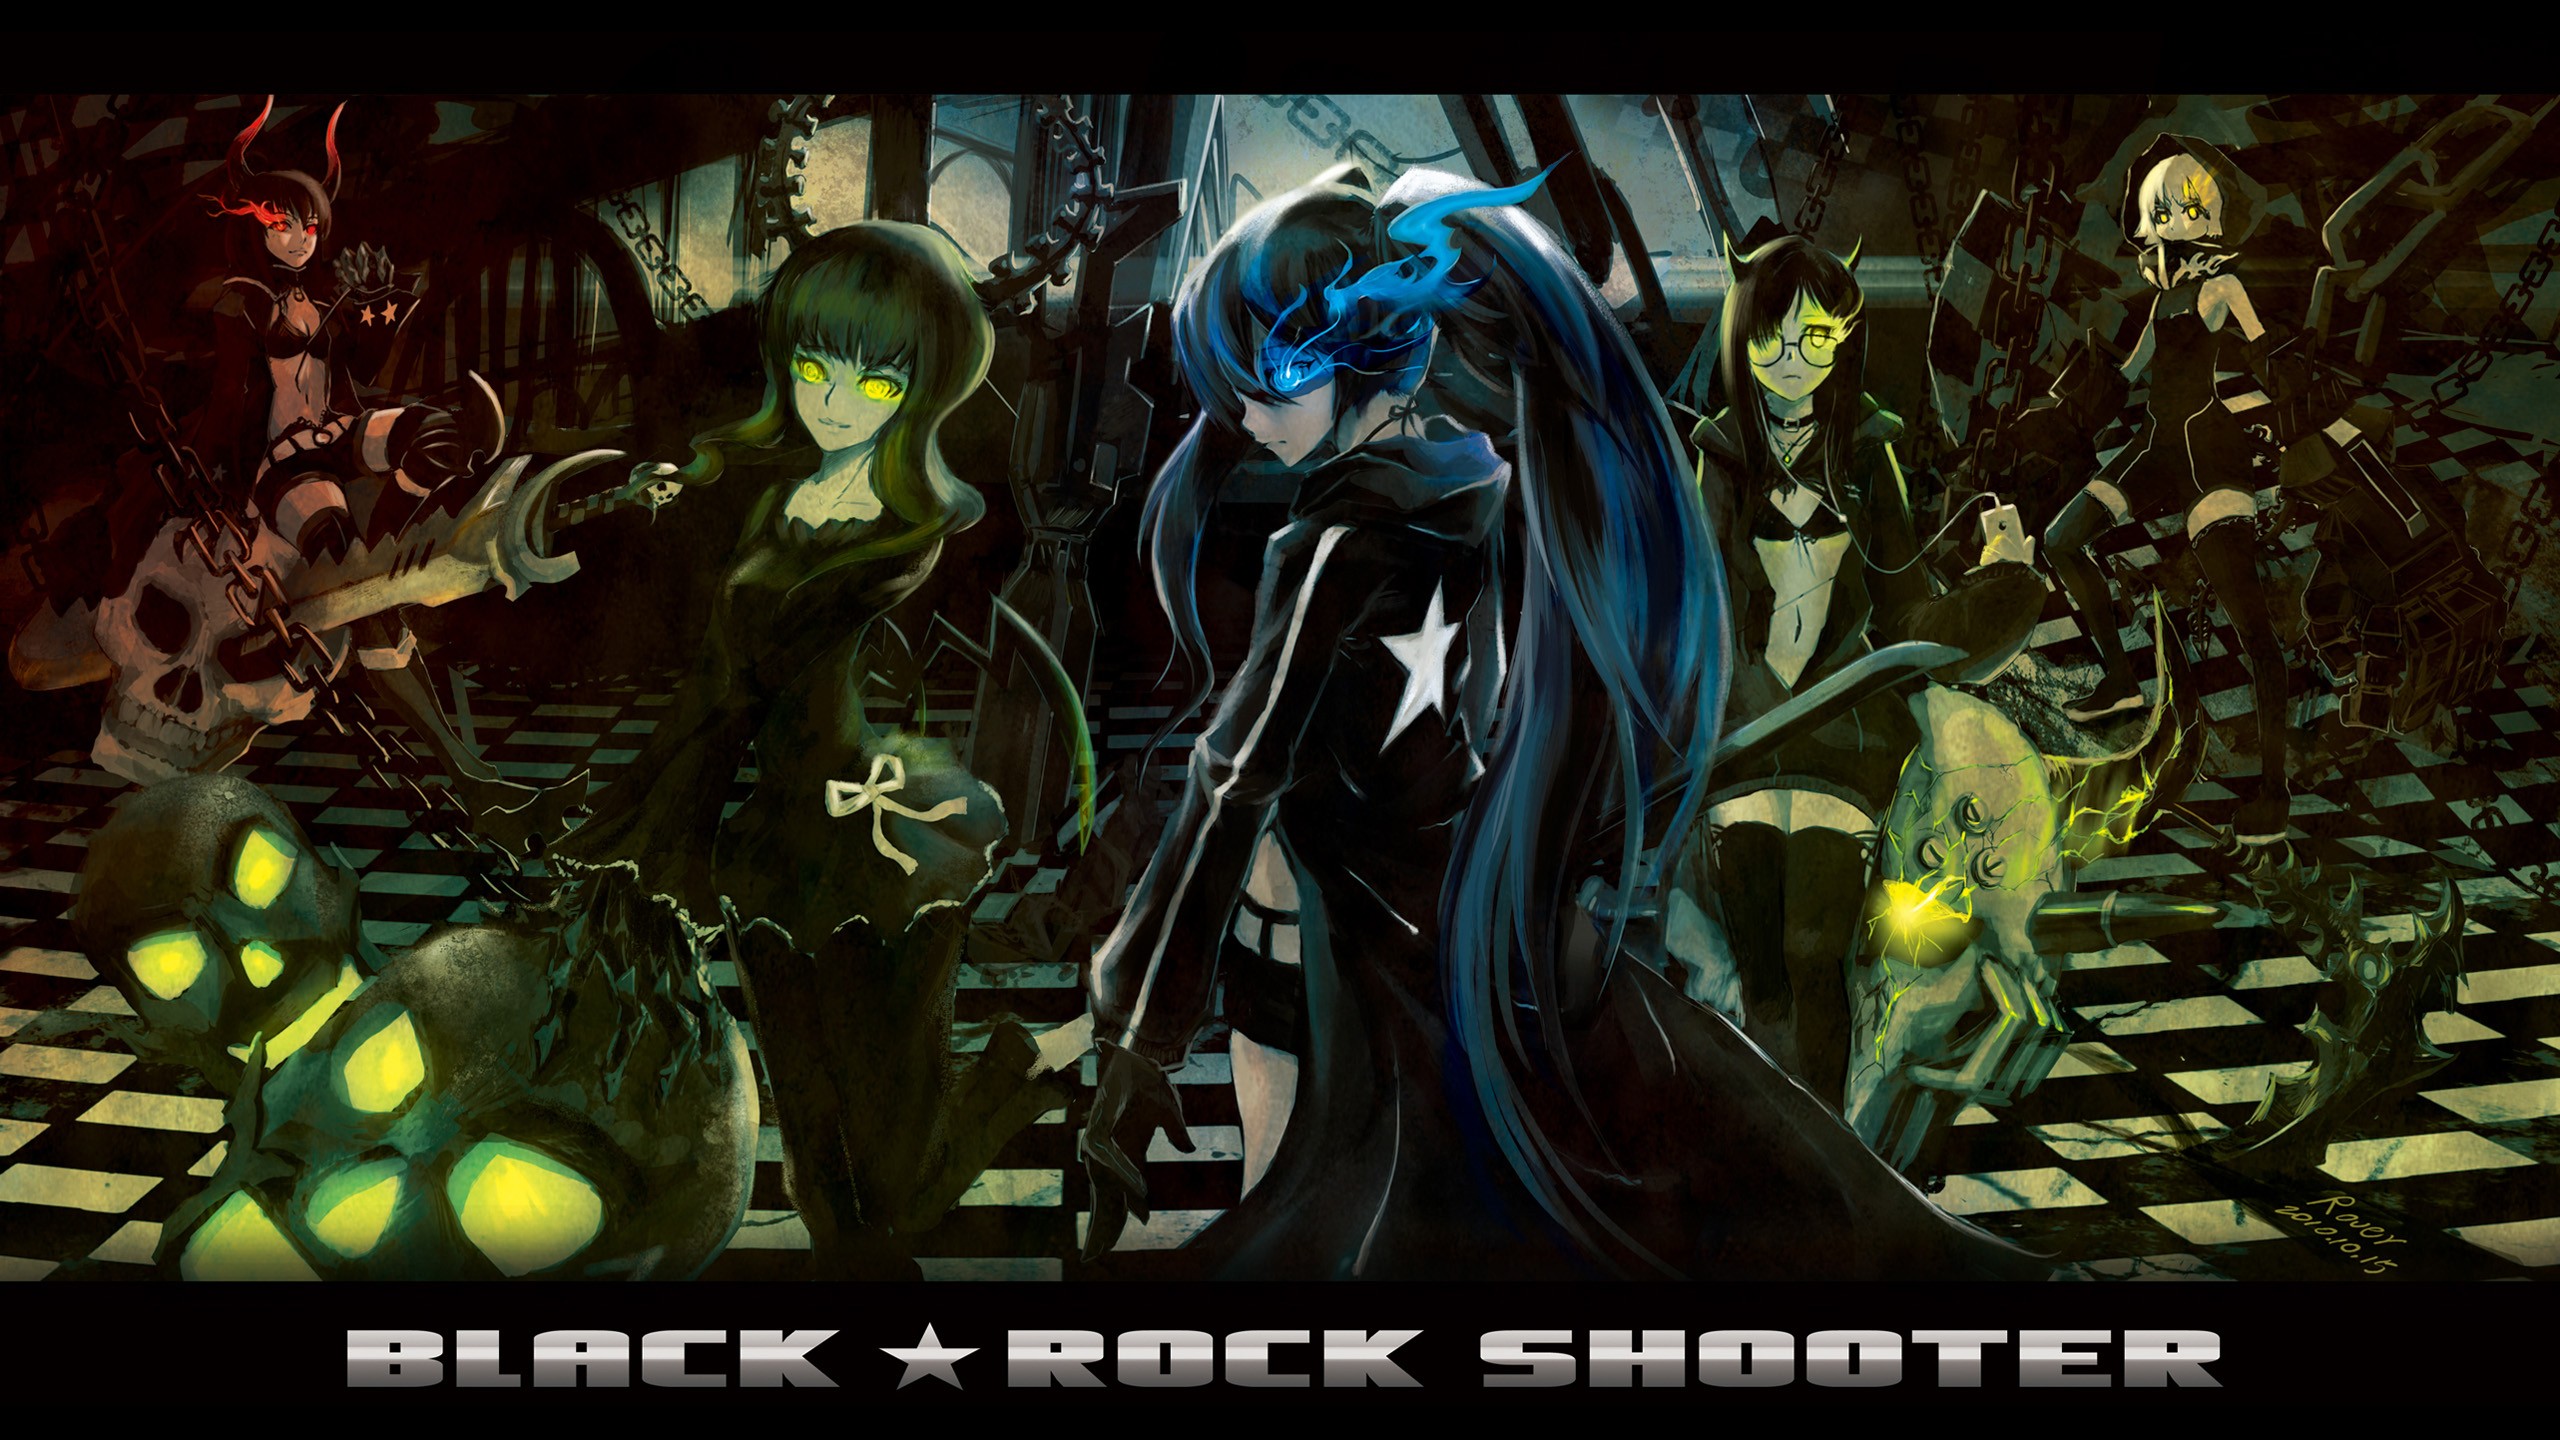 Anime 2560x1440 Black Rock Shooter anime girls anime Dead Master Black Gold Saw Strength (Black Rock Shooter) green eyes skull chains sword dark hair long hair blue eyes